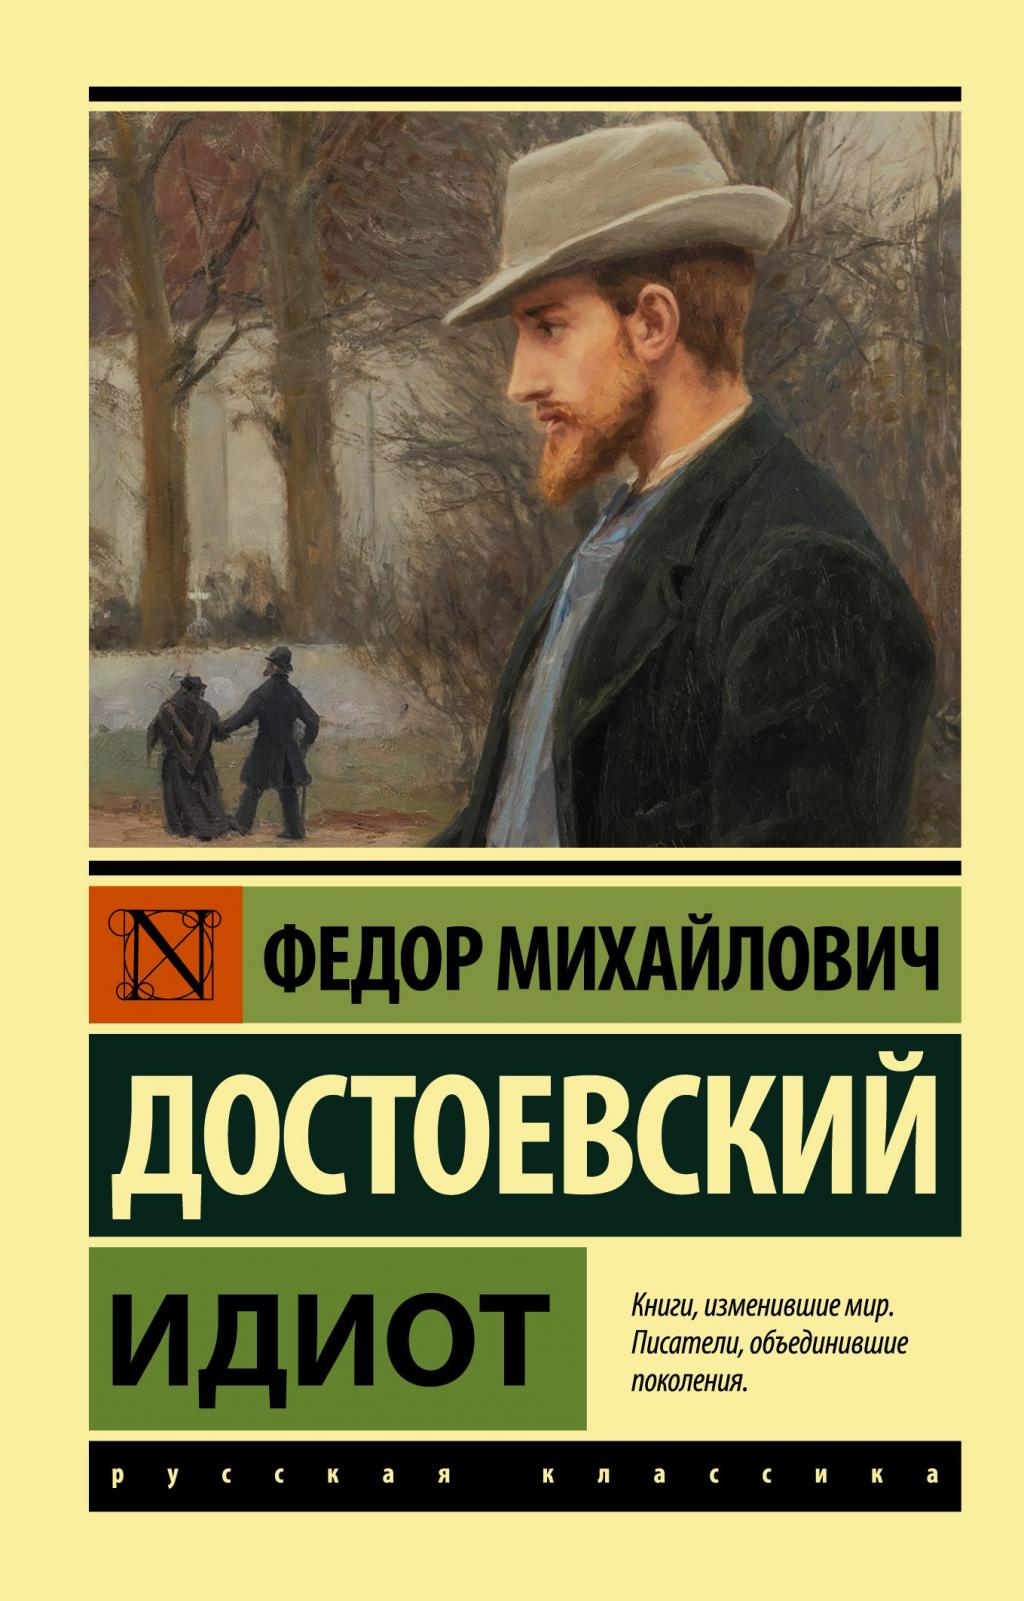 Ф.М. Достоевский "Идиот"